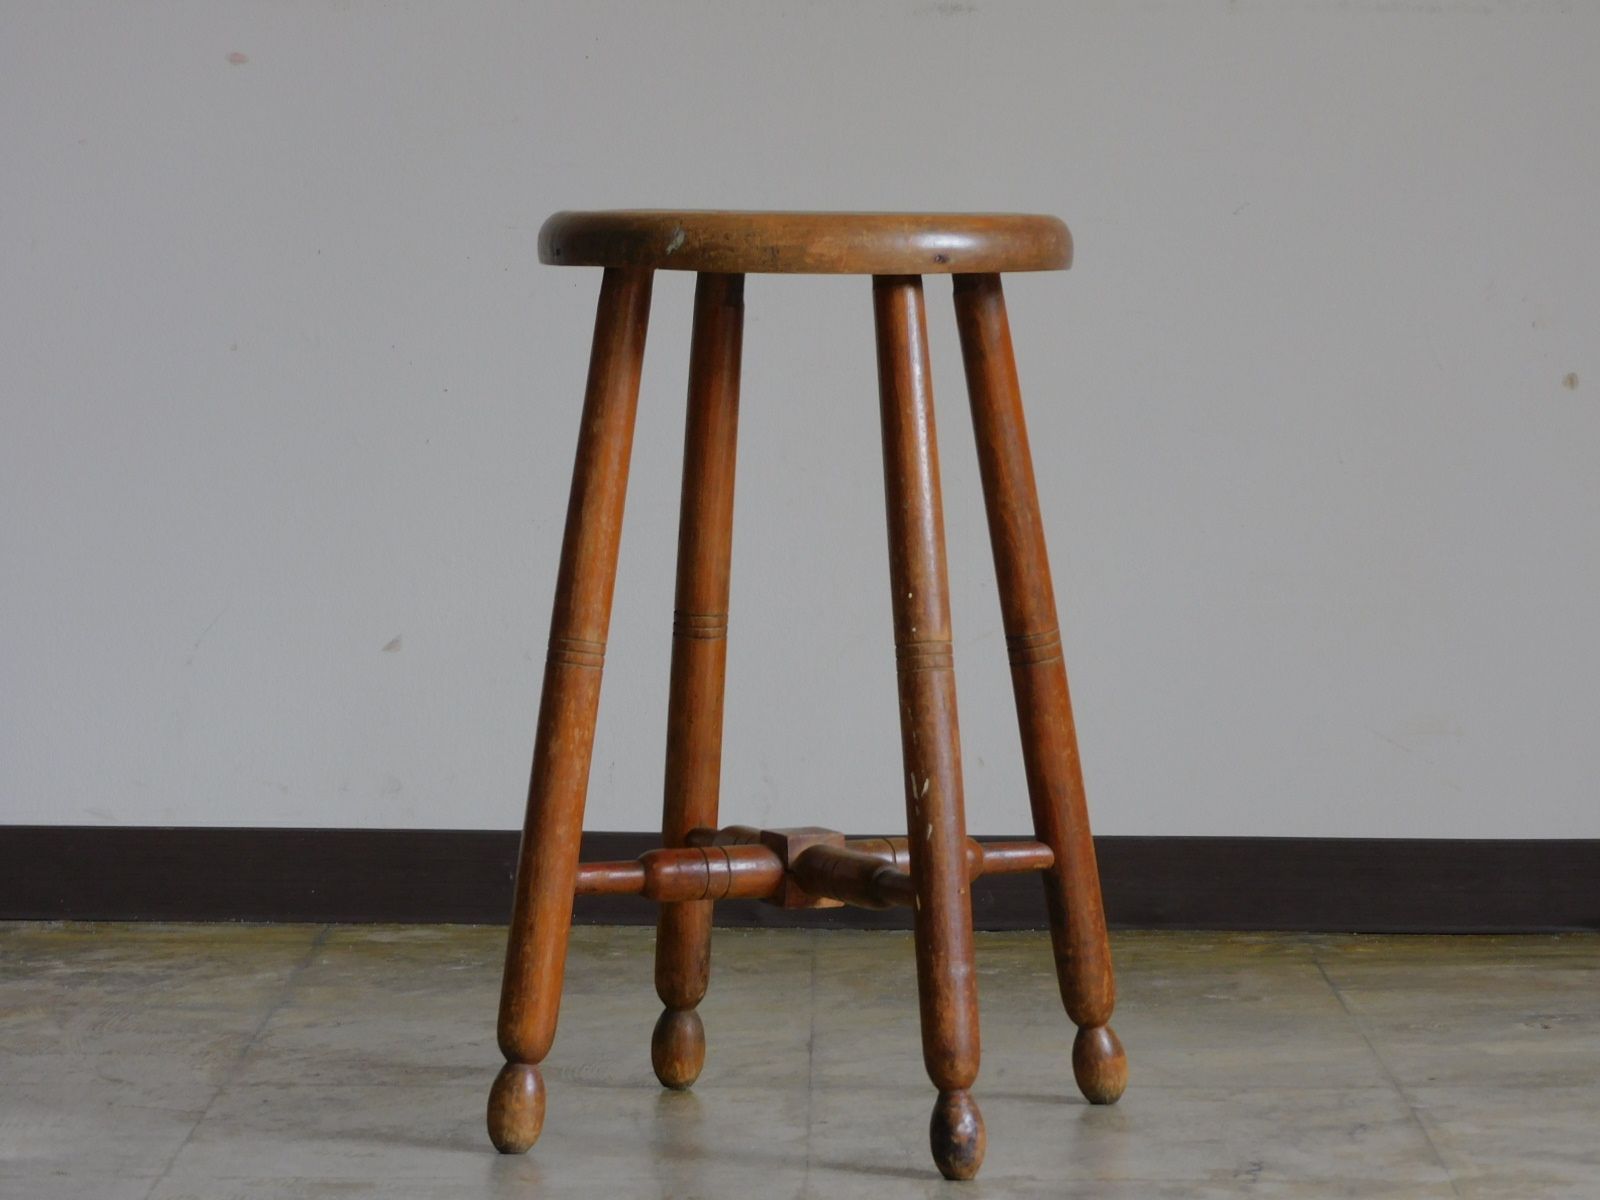 ふるい木味 一枚板座面の丸椅子・スツール HK-a-02101 / 古道具 